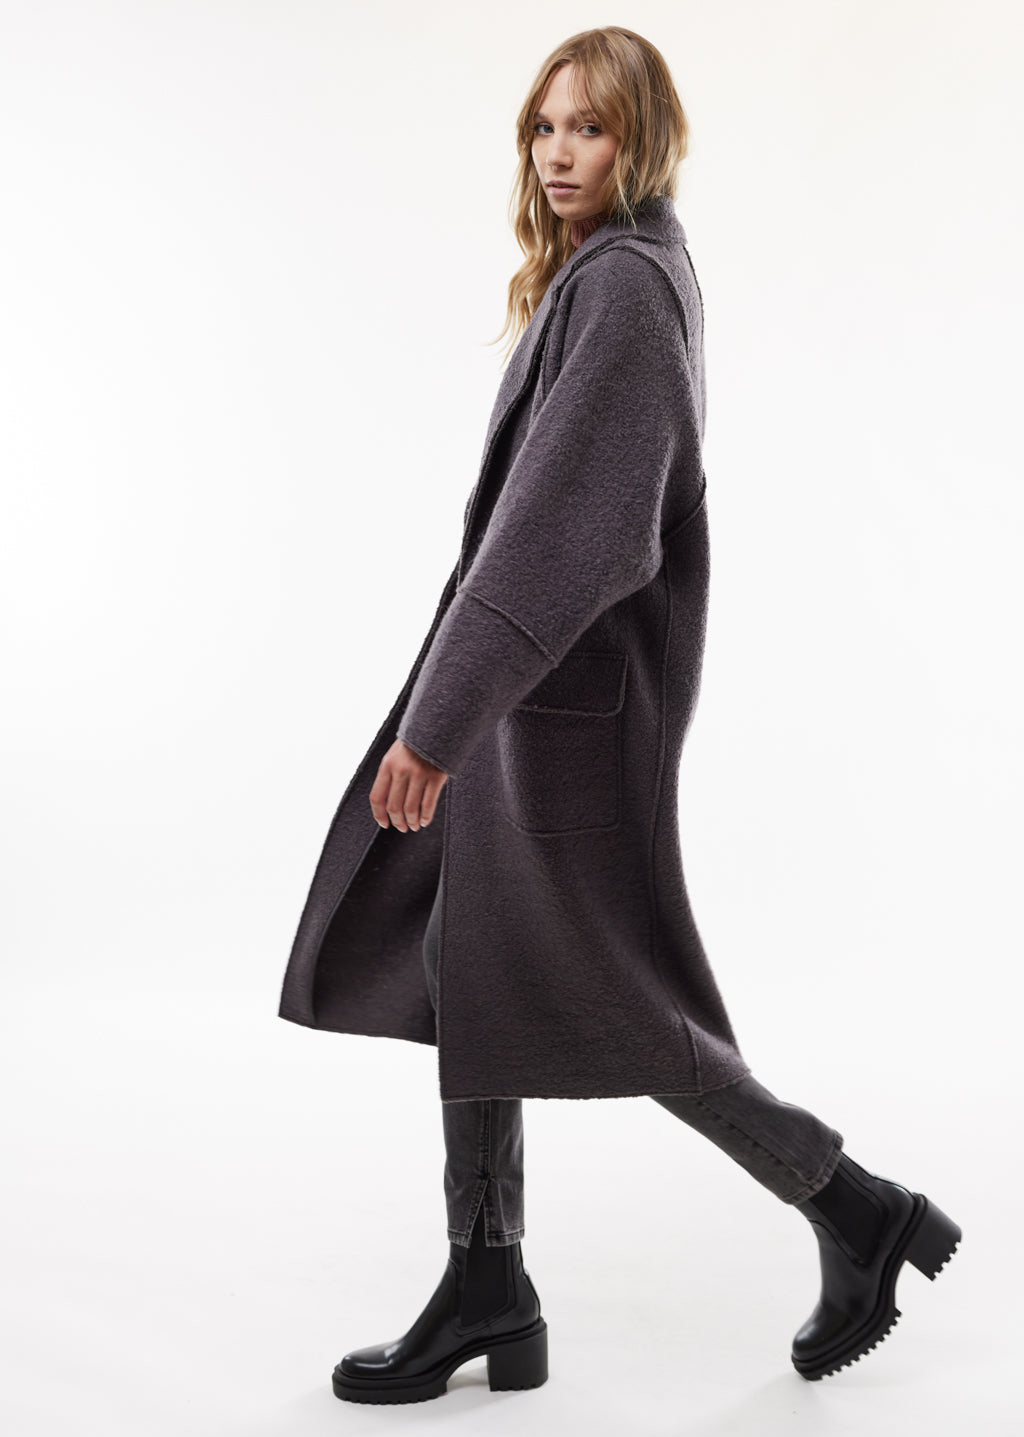 Wool Coat from LIVØM